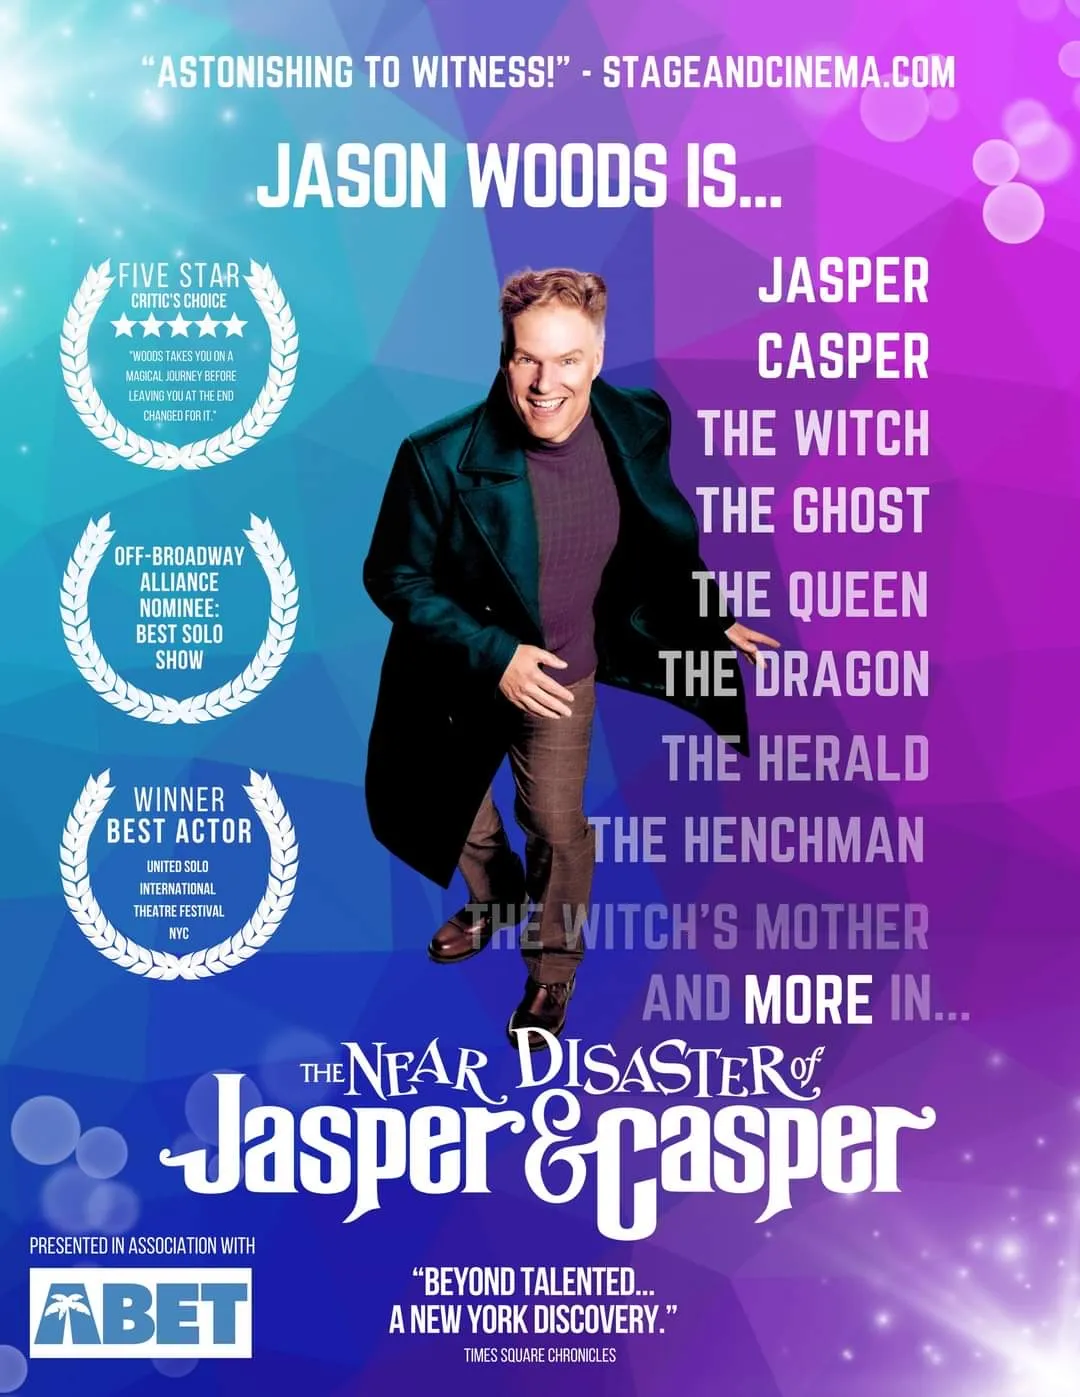 The Near Disaster of Jasper and Casper